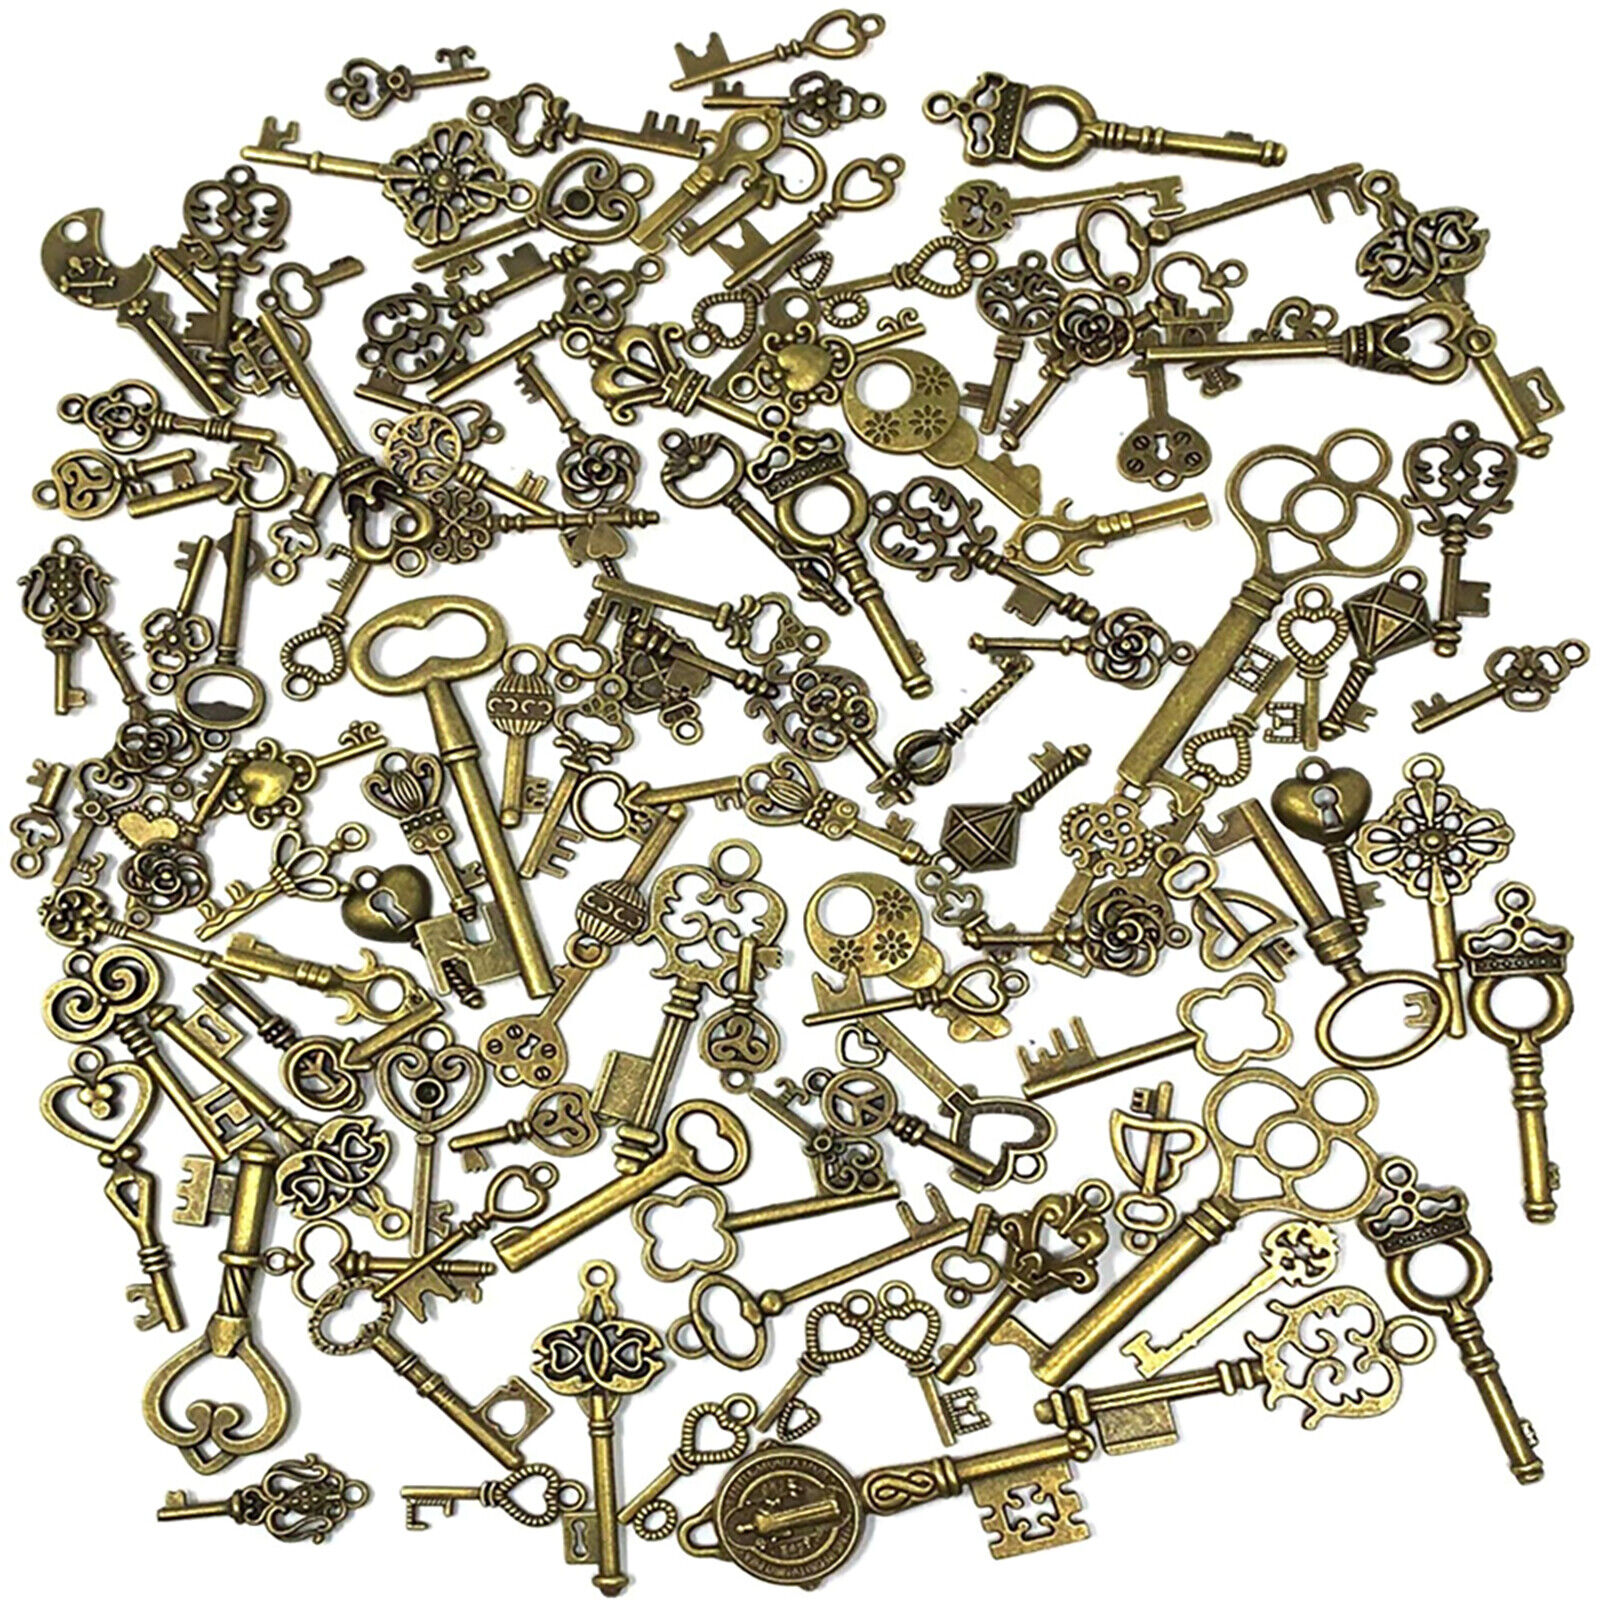 125pcs/Set Vintage Style Antique Mixed Skeleton Keys Furniture Cabinet Old Lock